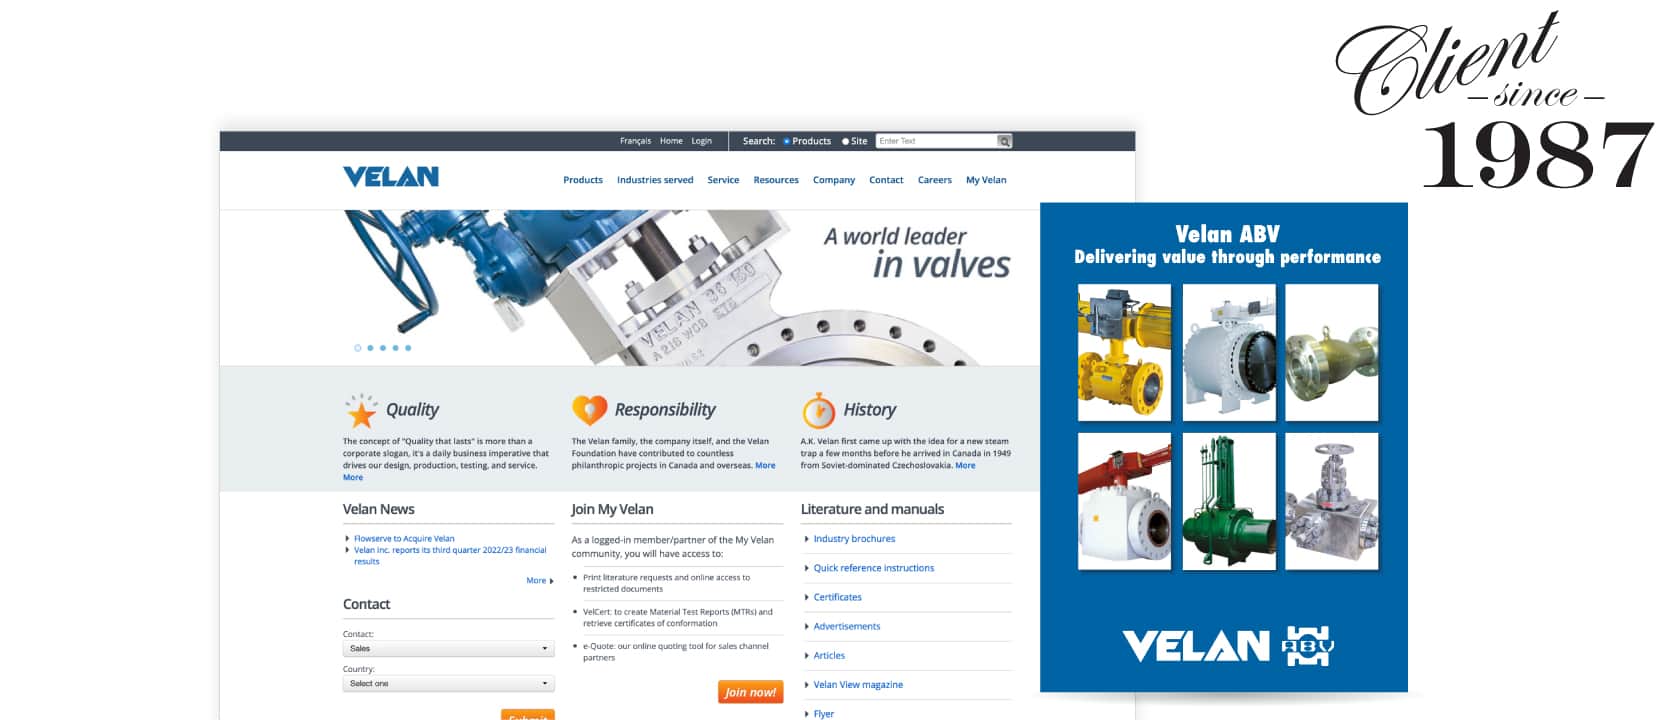 Une couverture d'un manuel de Velan ABV superposé à une capture d'écran de la page d'accueil de Velan